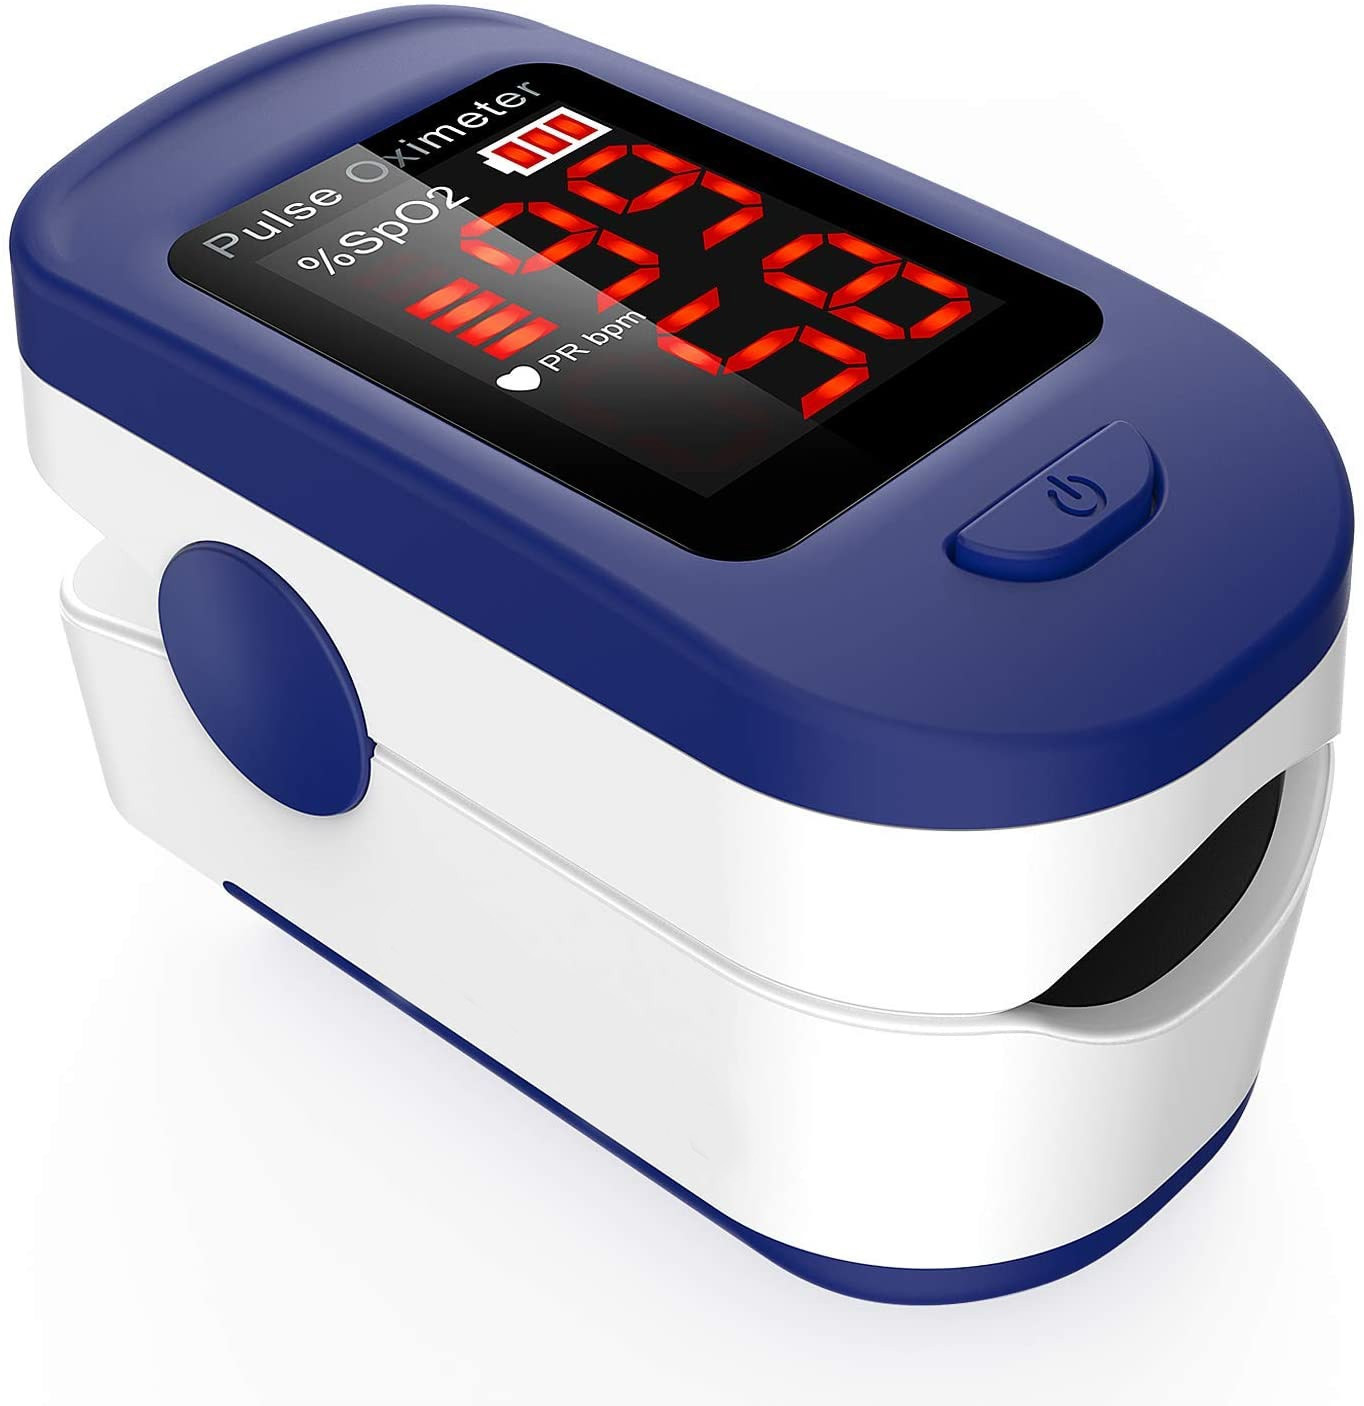 Saturimetro Pulsossimetro da Dito Professionale con Display LCD per misurare i Livelli di ossigeno SpO2 e Battito Cardiaco, CI-T5I7-UJ97pre, 24 €